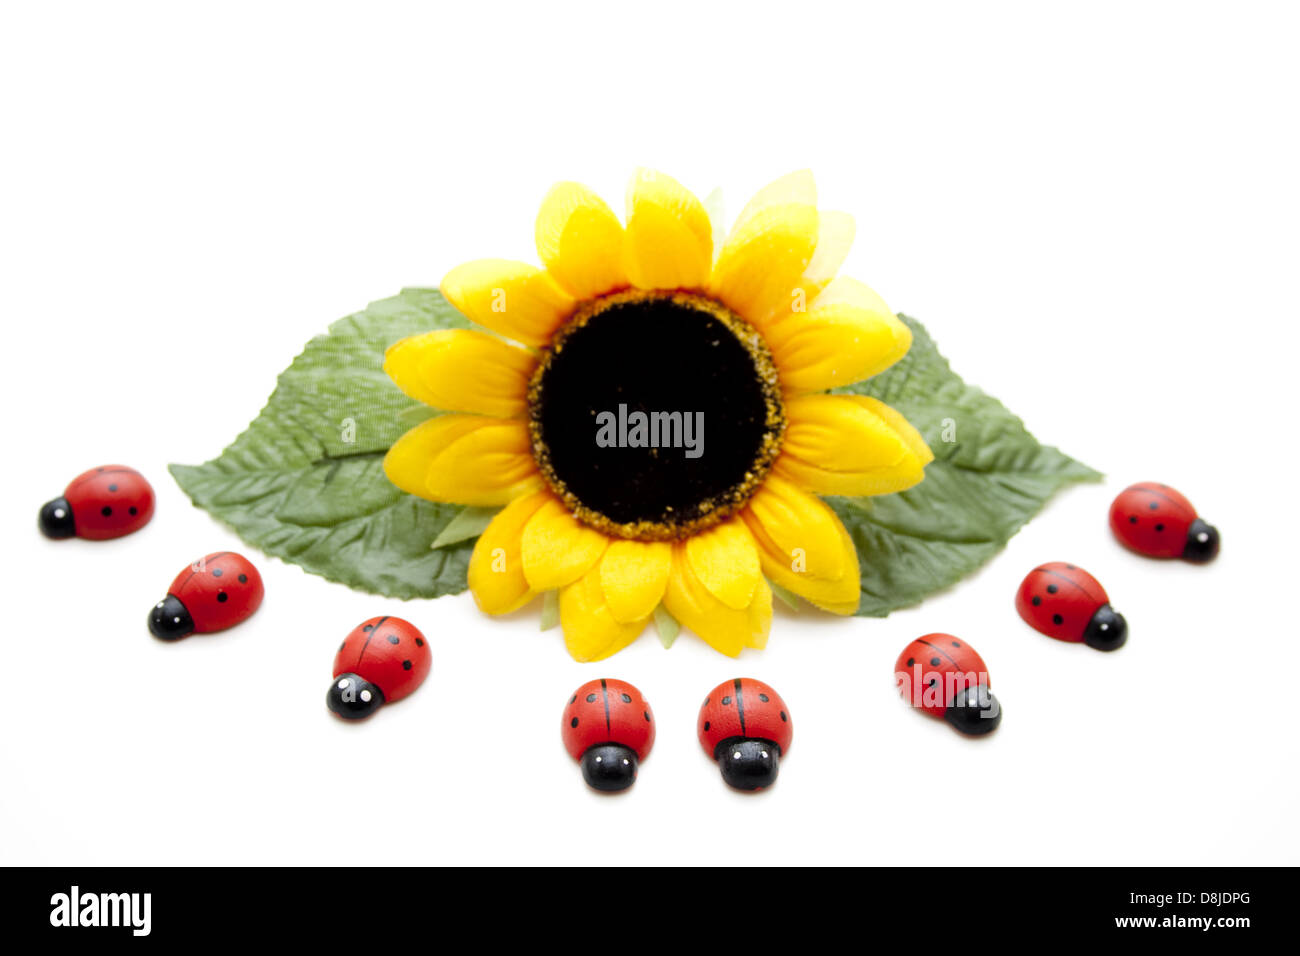 Sunflower with ladybug Stock Photo